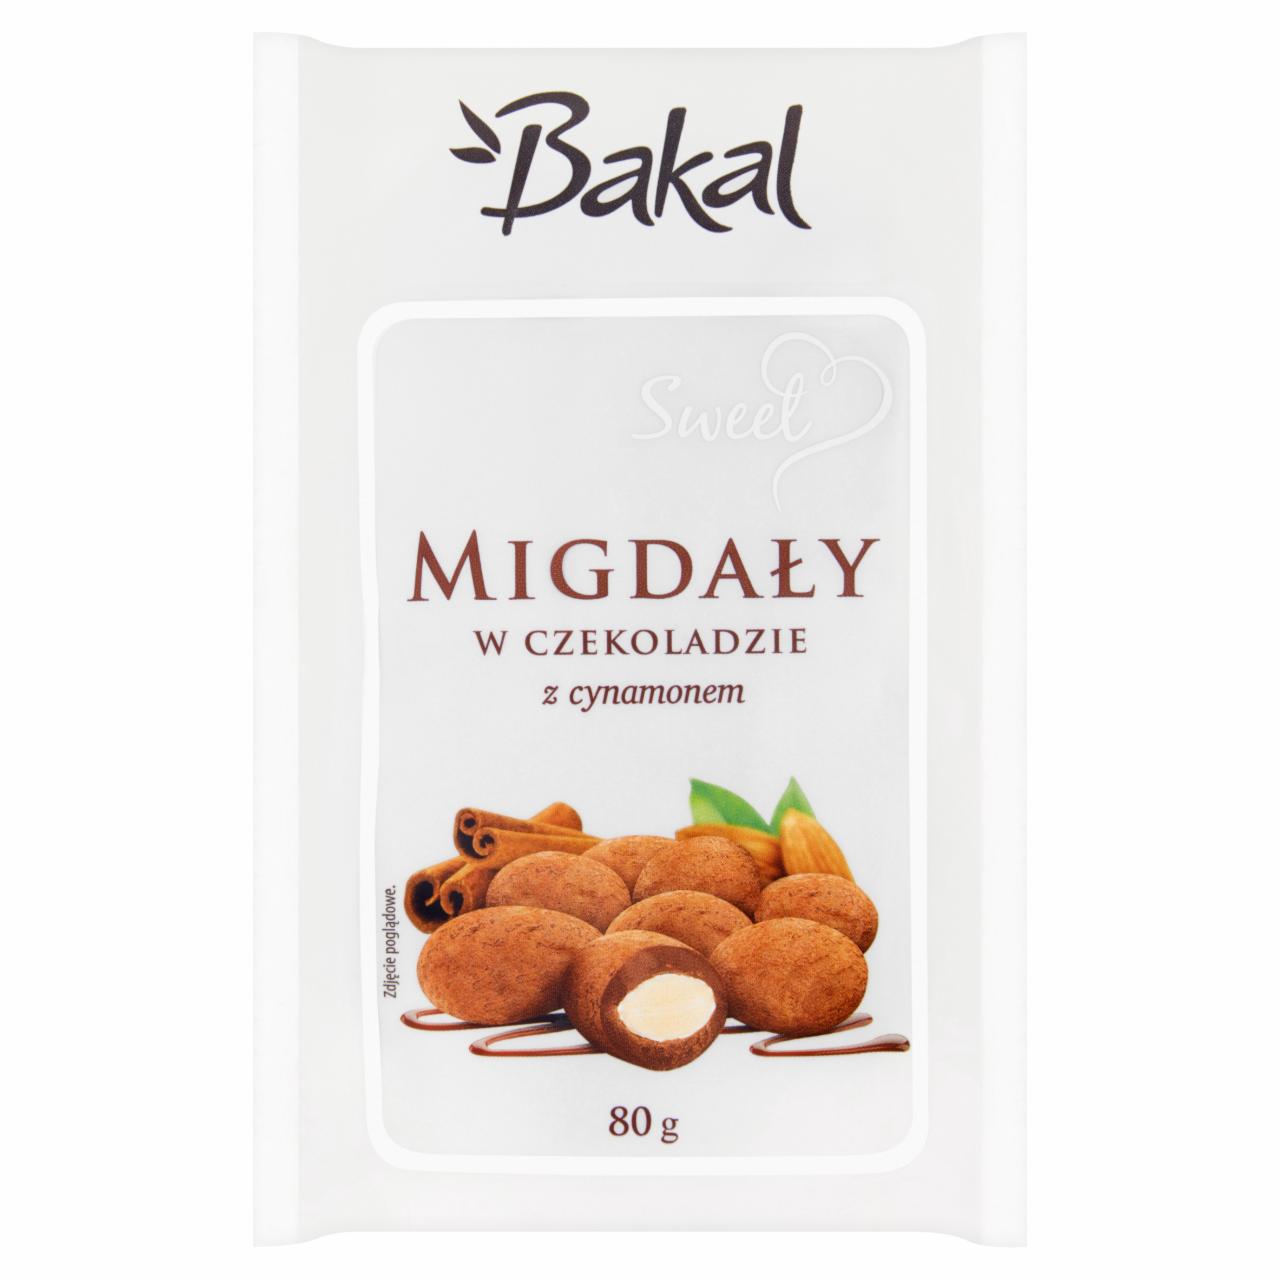 Zdjęcia - Bakal Sweet Migdały w czekoladzie z cynamonem 80 g